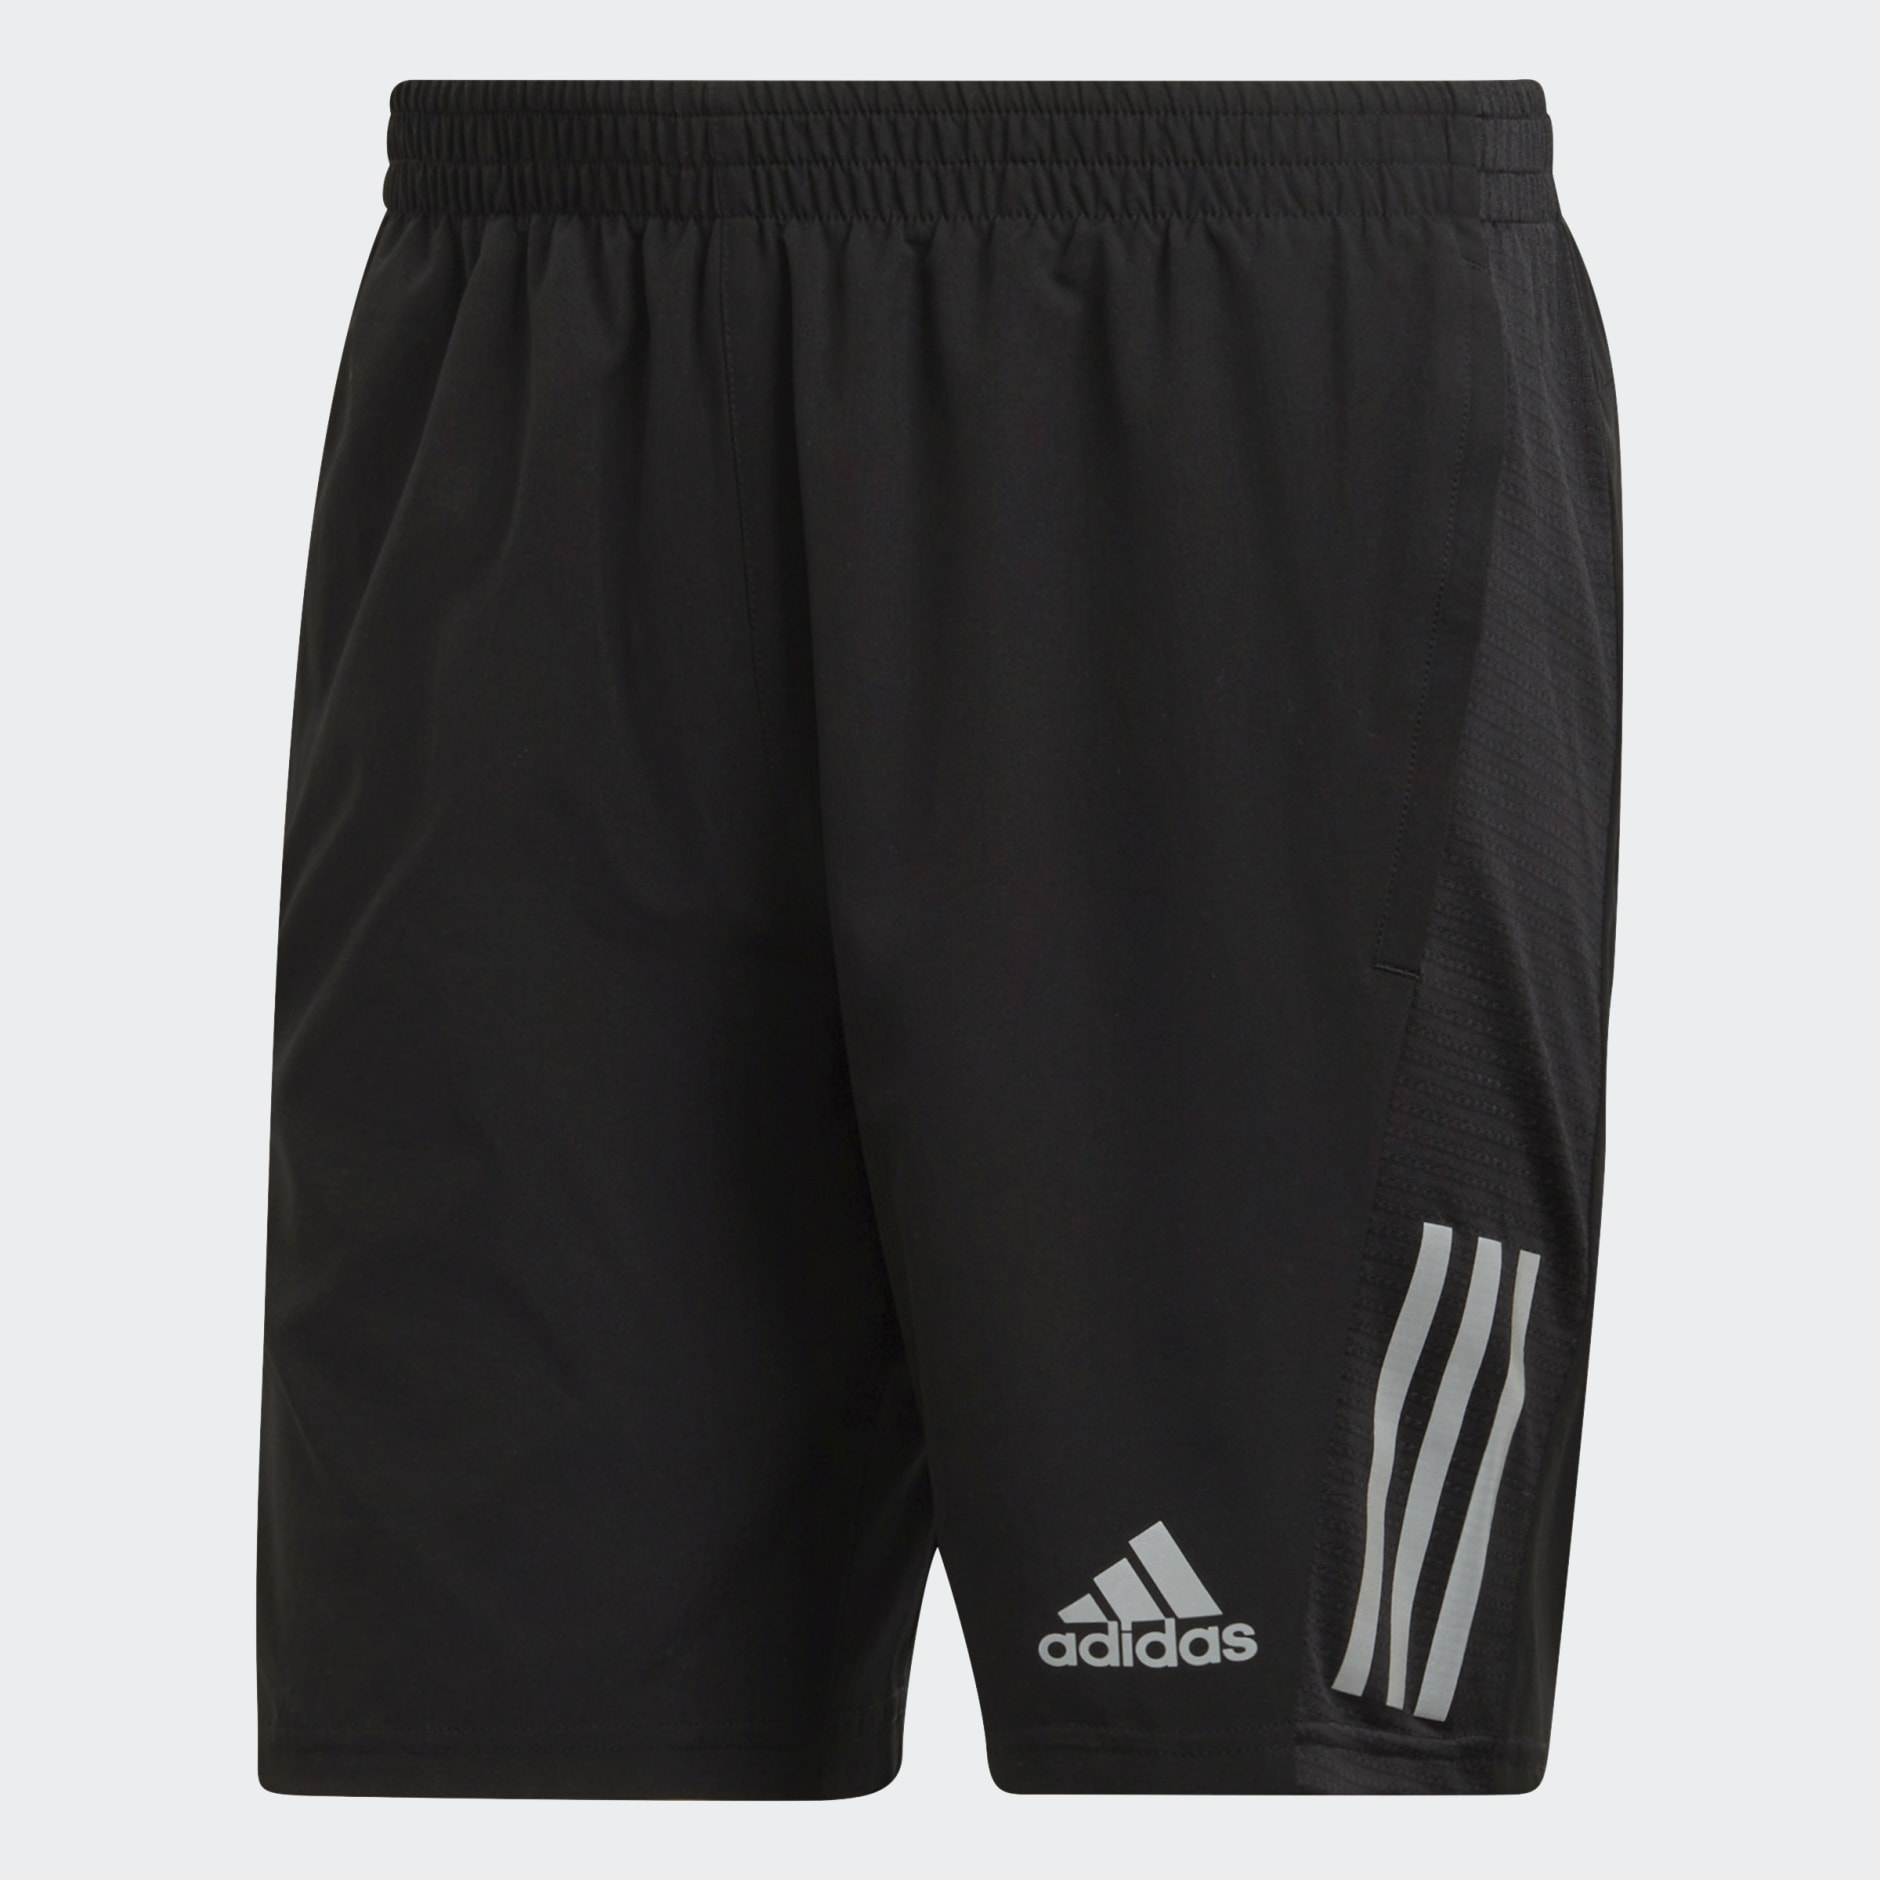 adidas Own the Run Shorts - Black | adidas UAE